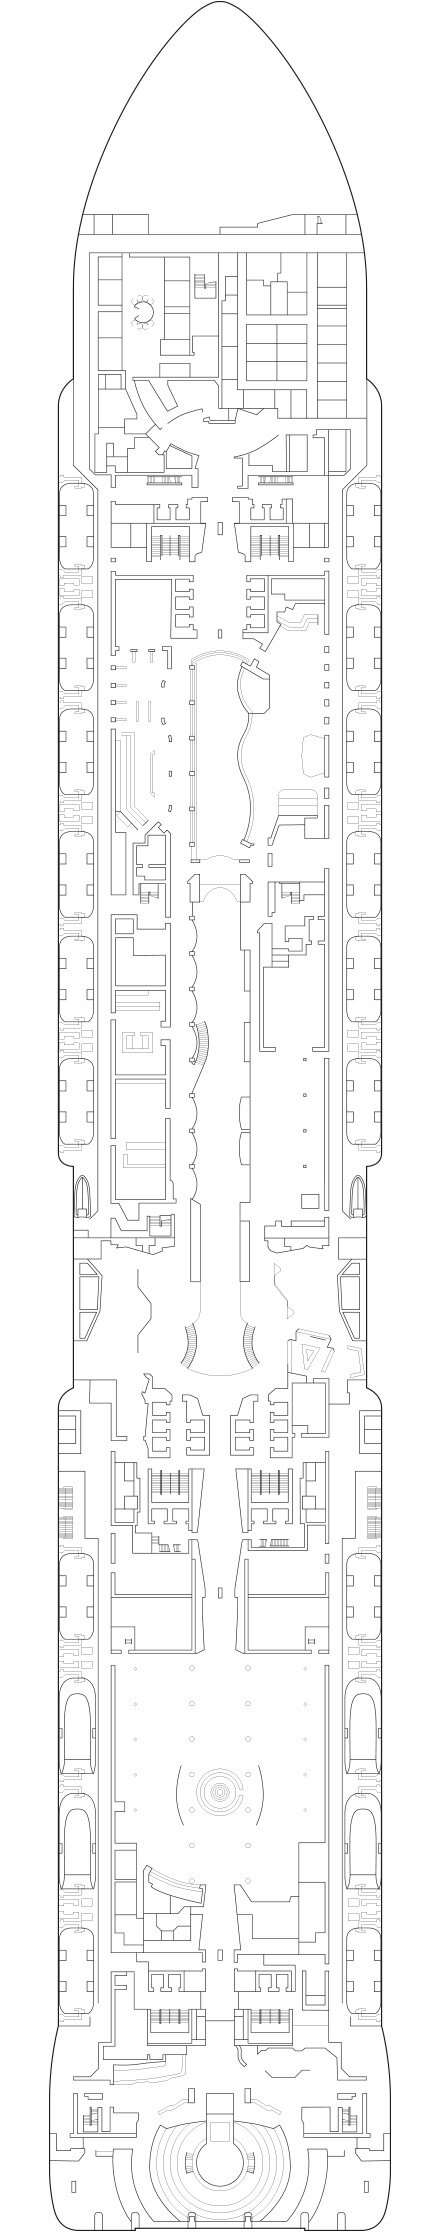 MSC Grandiosa - Decksplan Deck 7